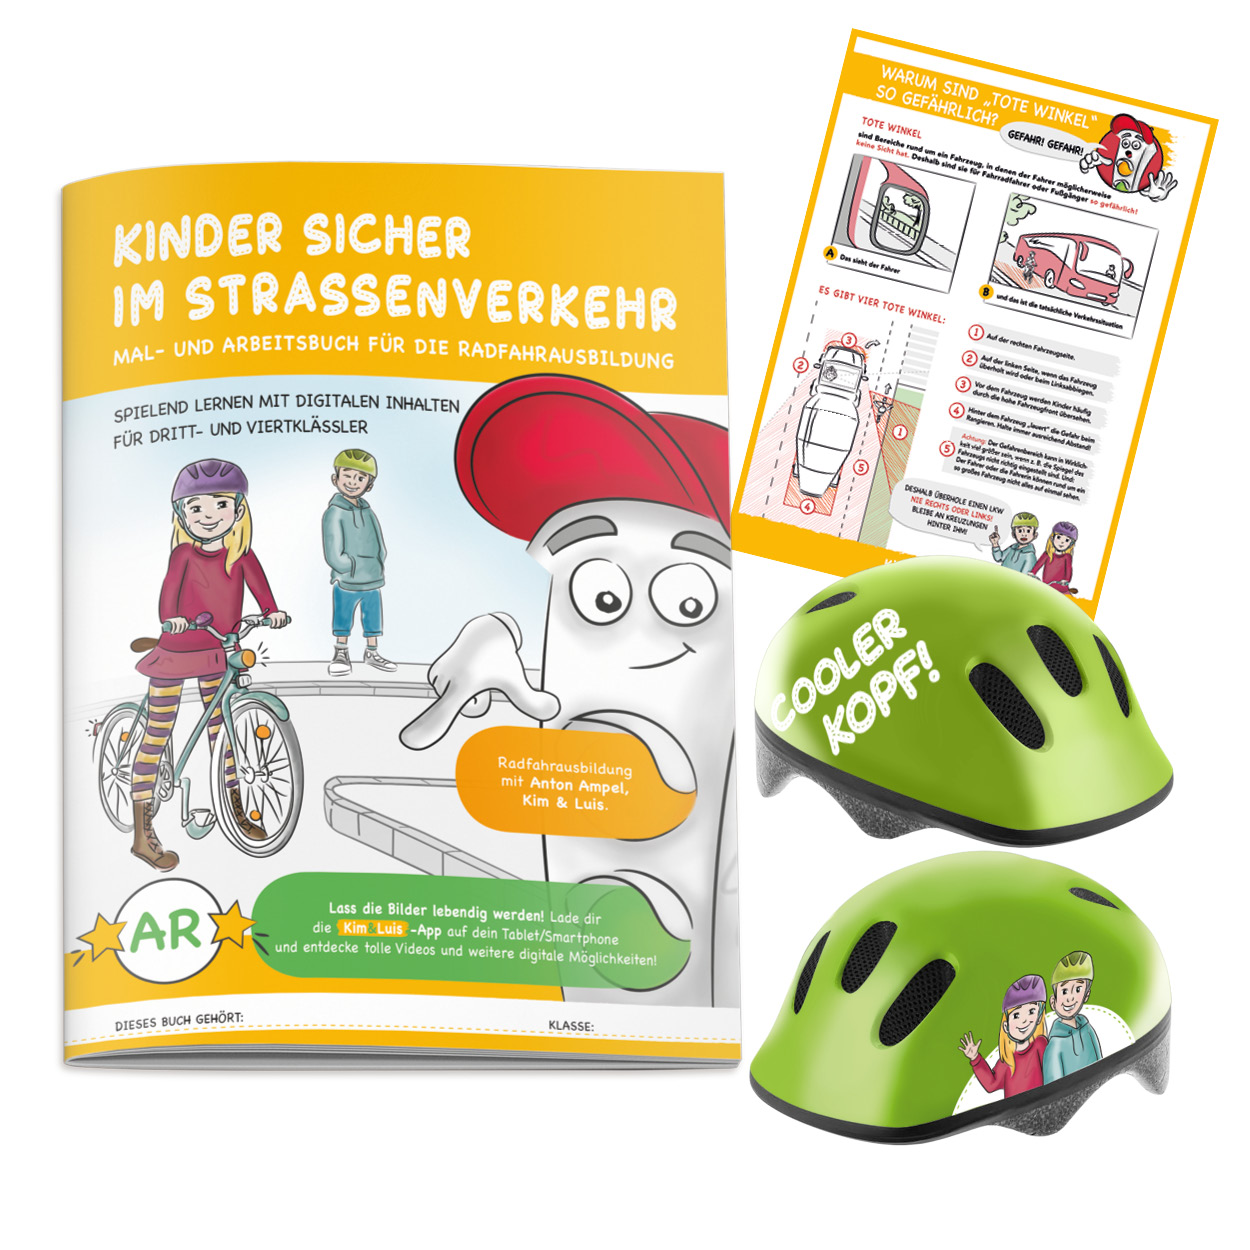 Mal- und Arbeitsbuch zur Radfahrausbildung